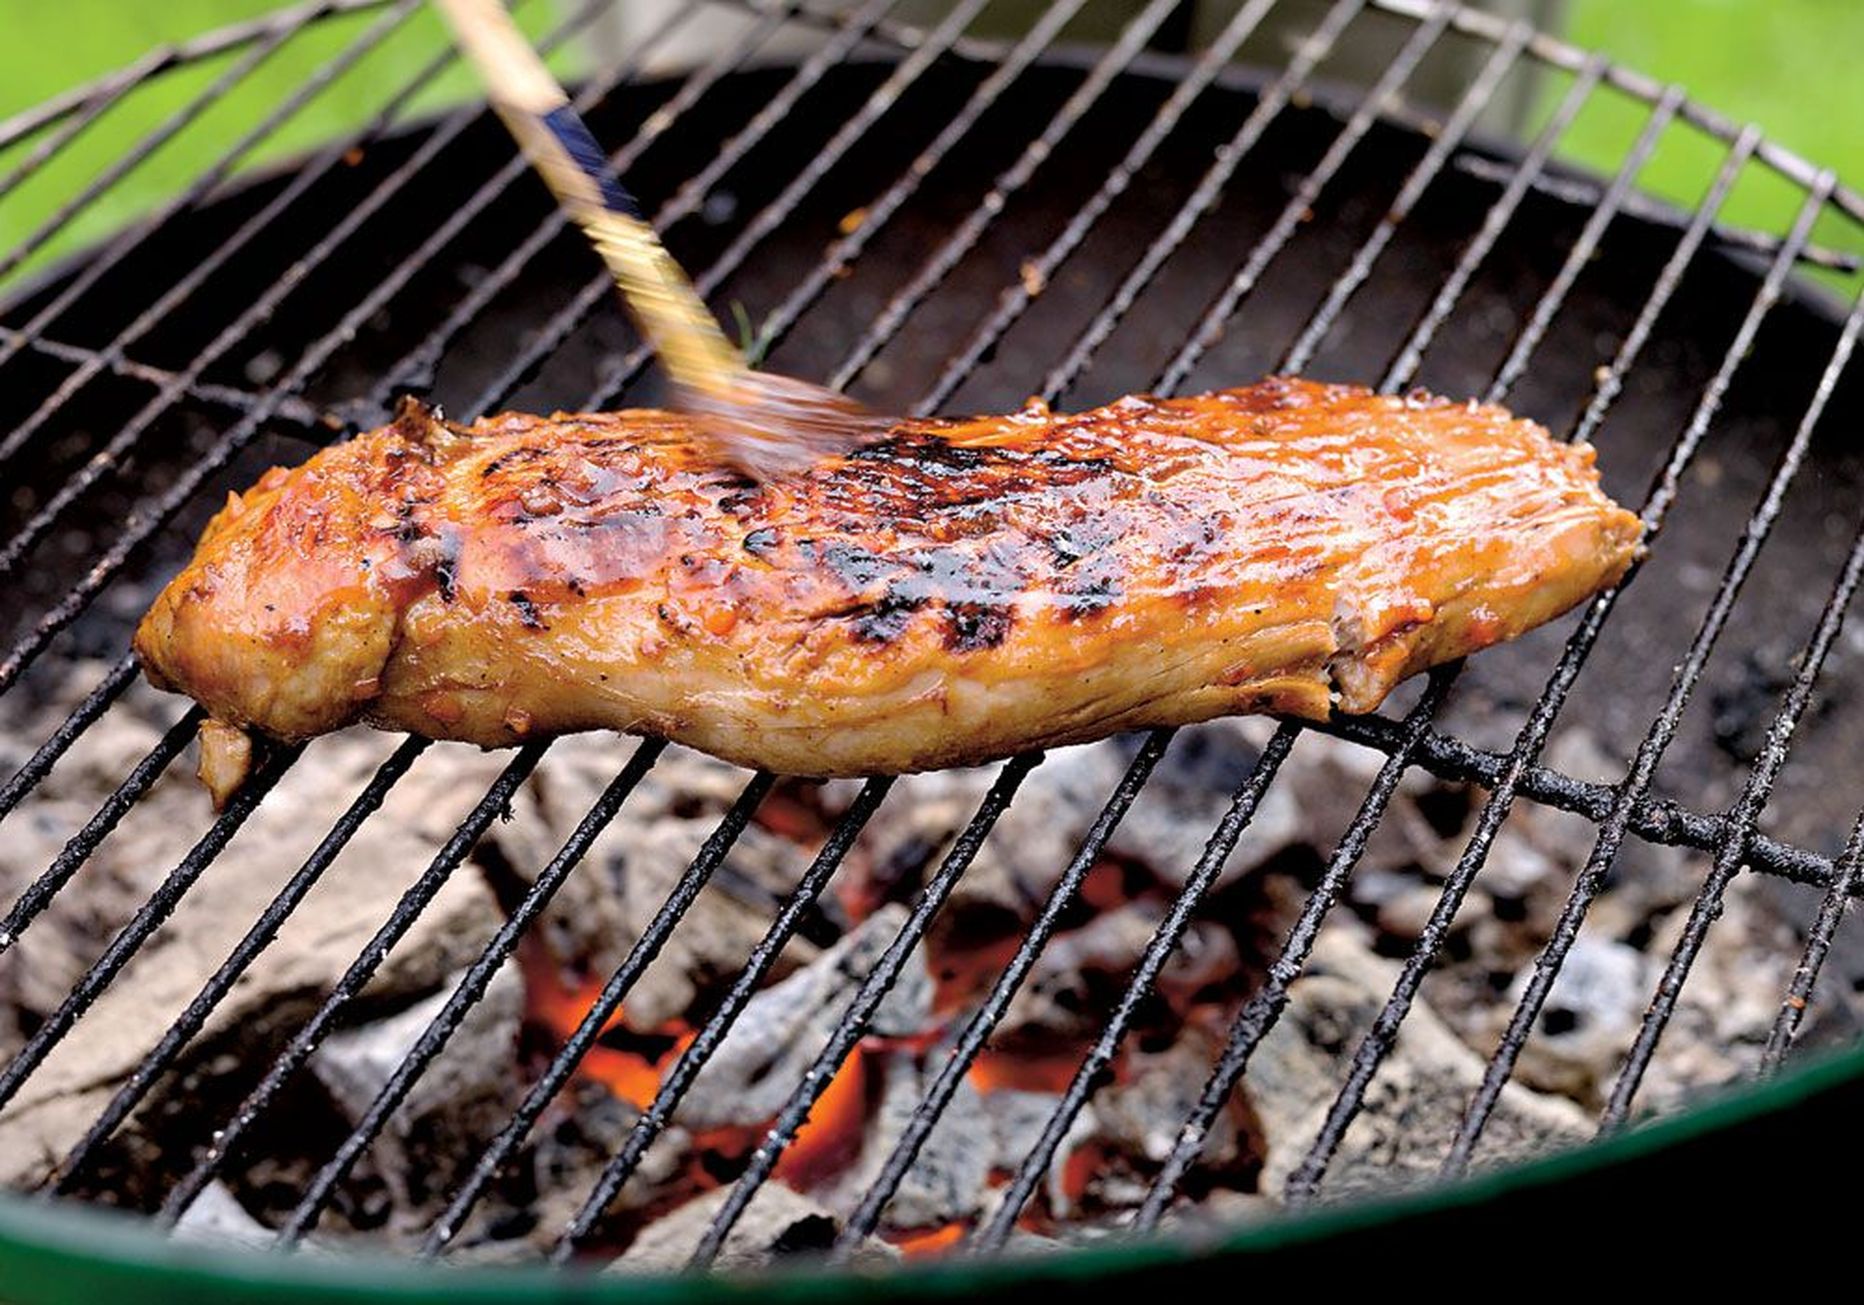 Парное мясо,  приготовленное на углях, может получиться жестковатым. Лучше выбрать охлажденную вырезку.